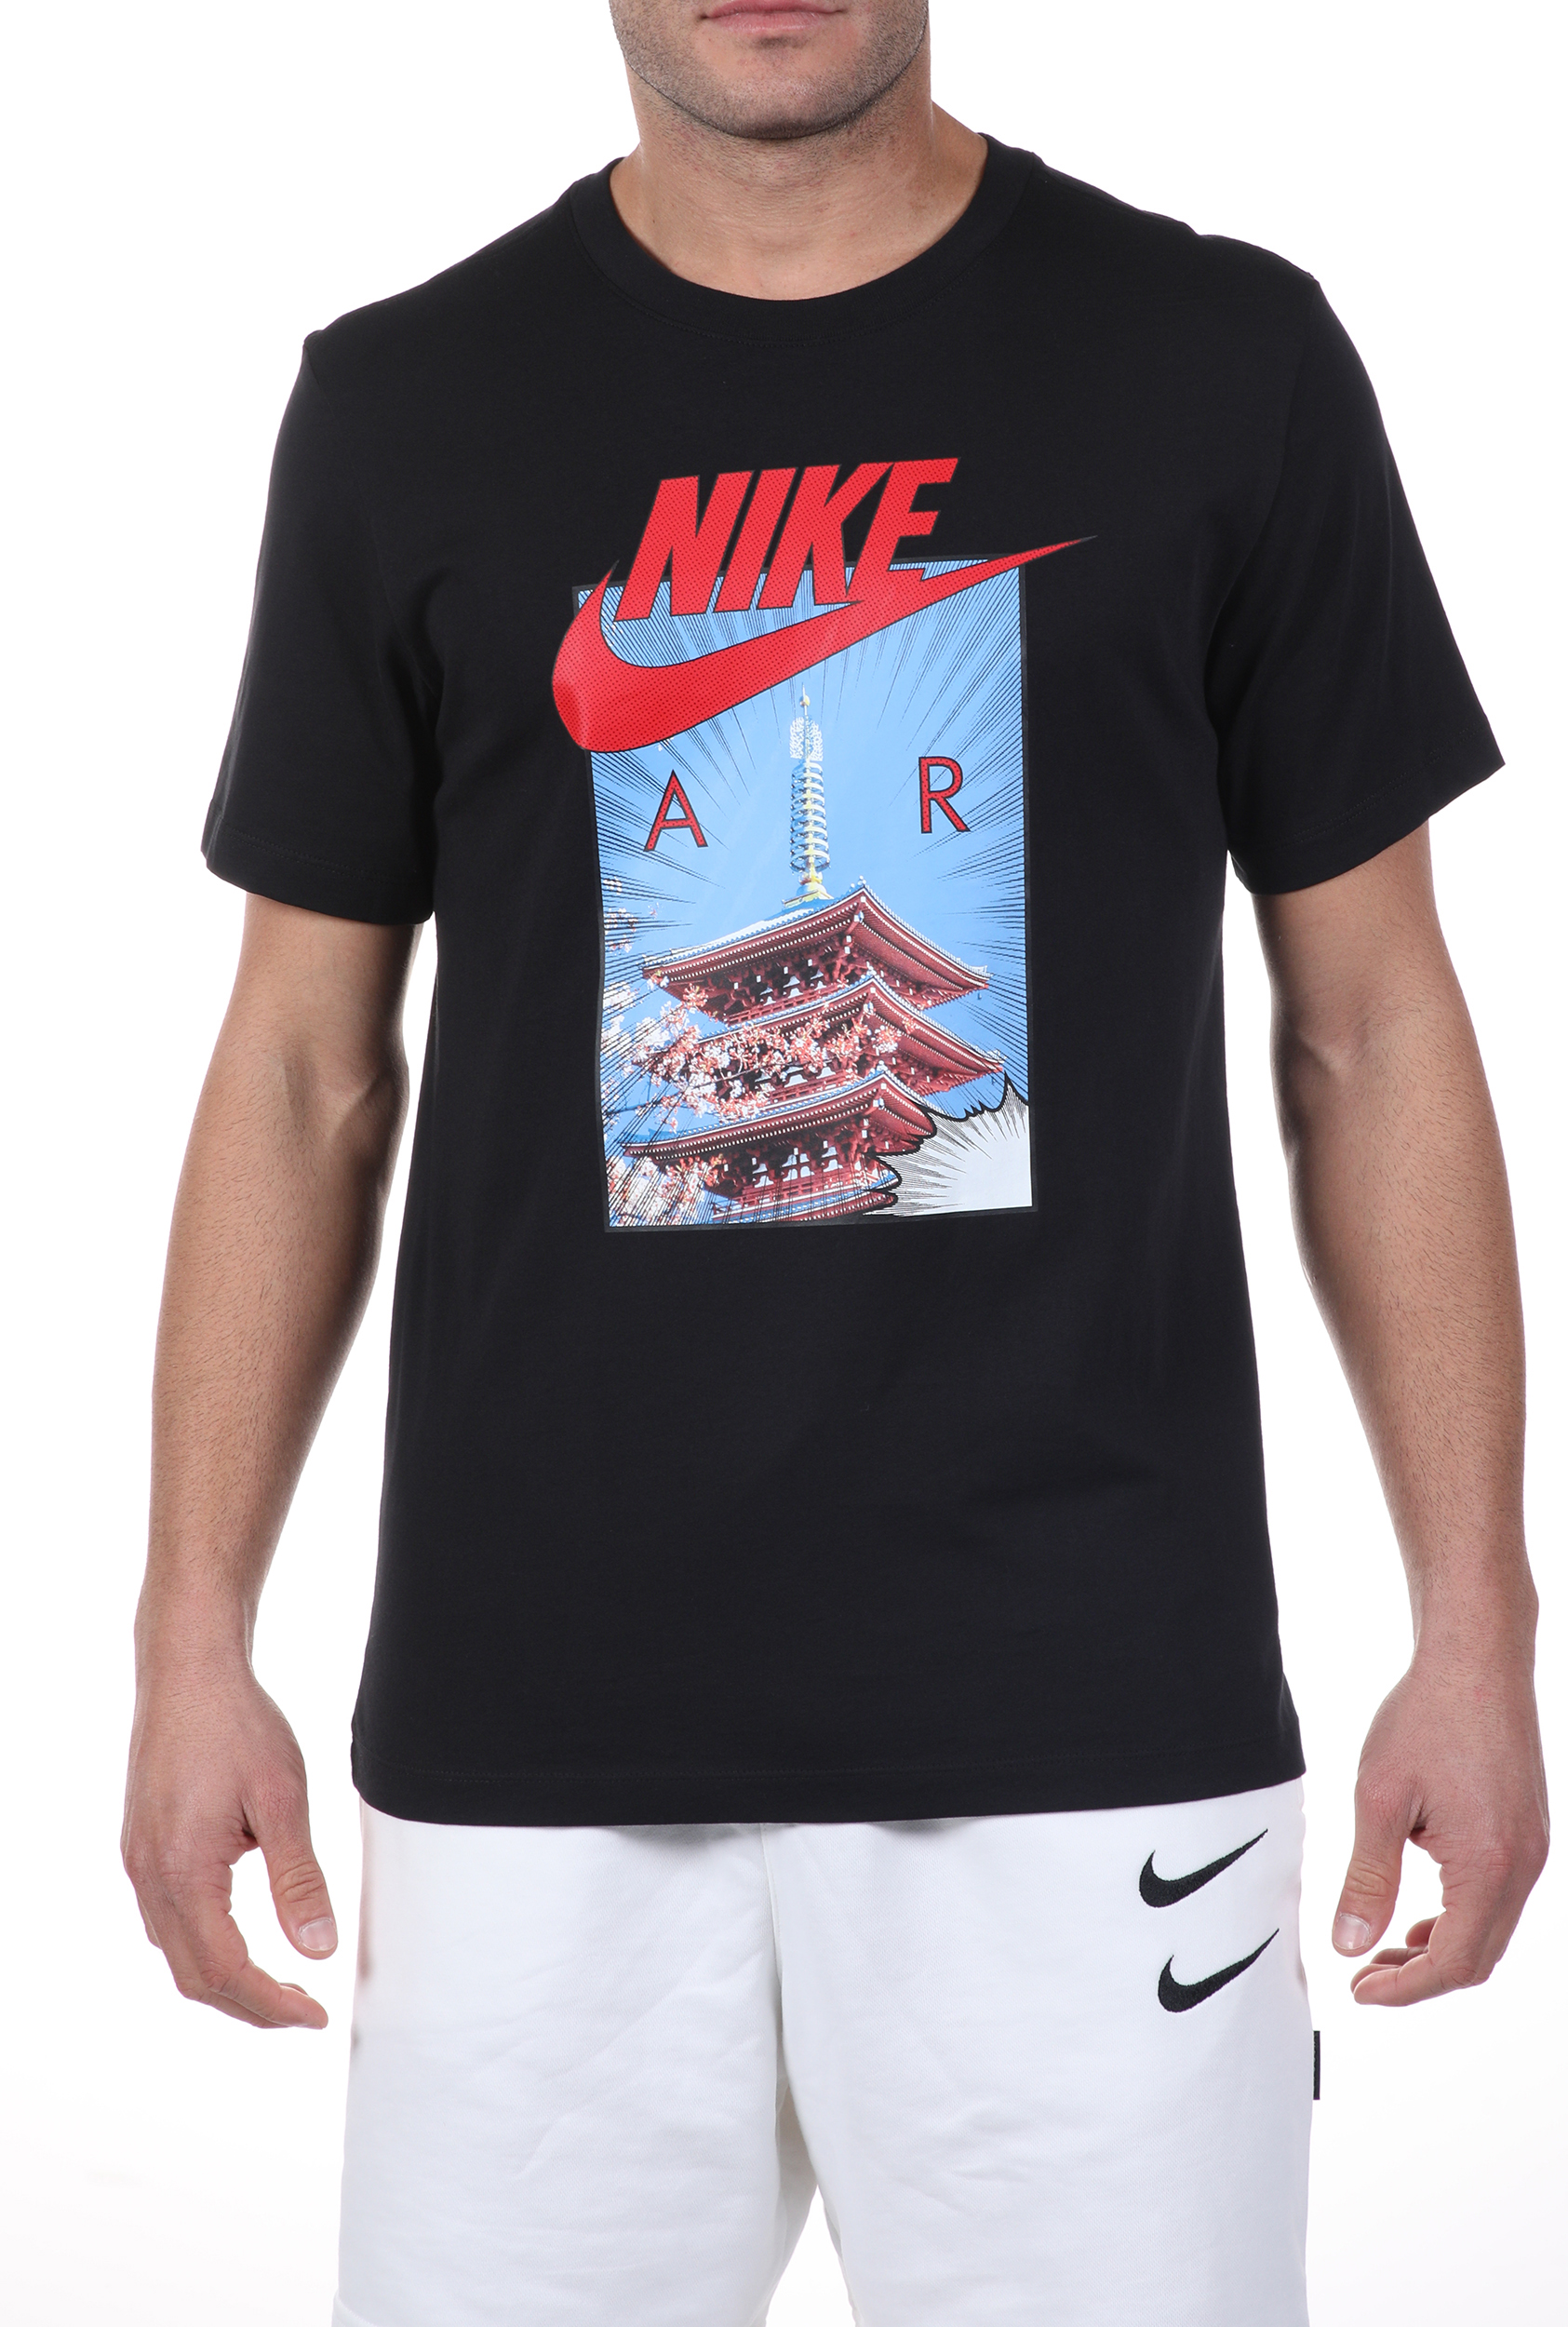 Ανδρικά/Ρούχα/Αθλητικά/T-shirt NIKE - Ανδρικό t-shirt NIKE NSW TEE AIR PHOTO TEE μαύρο